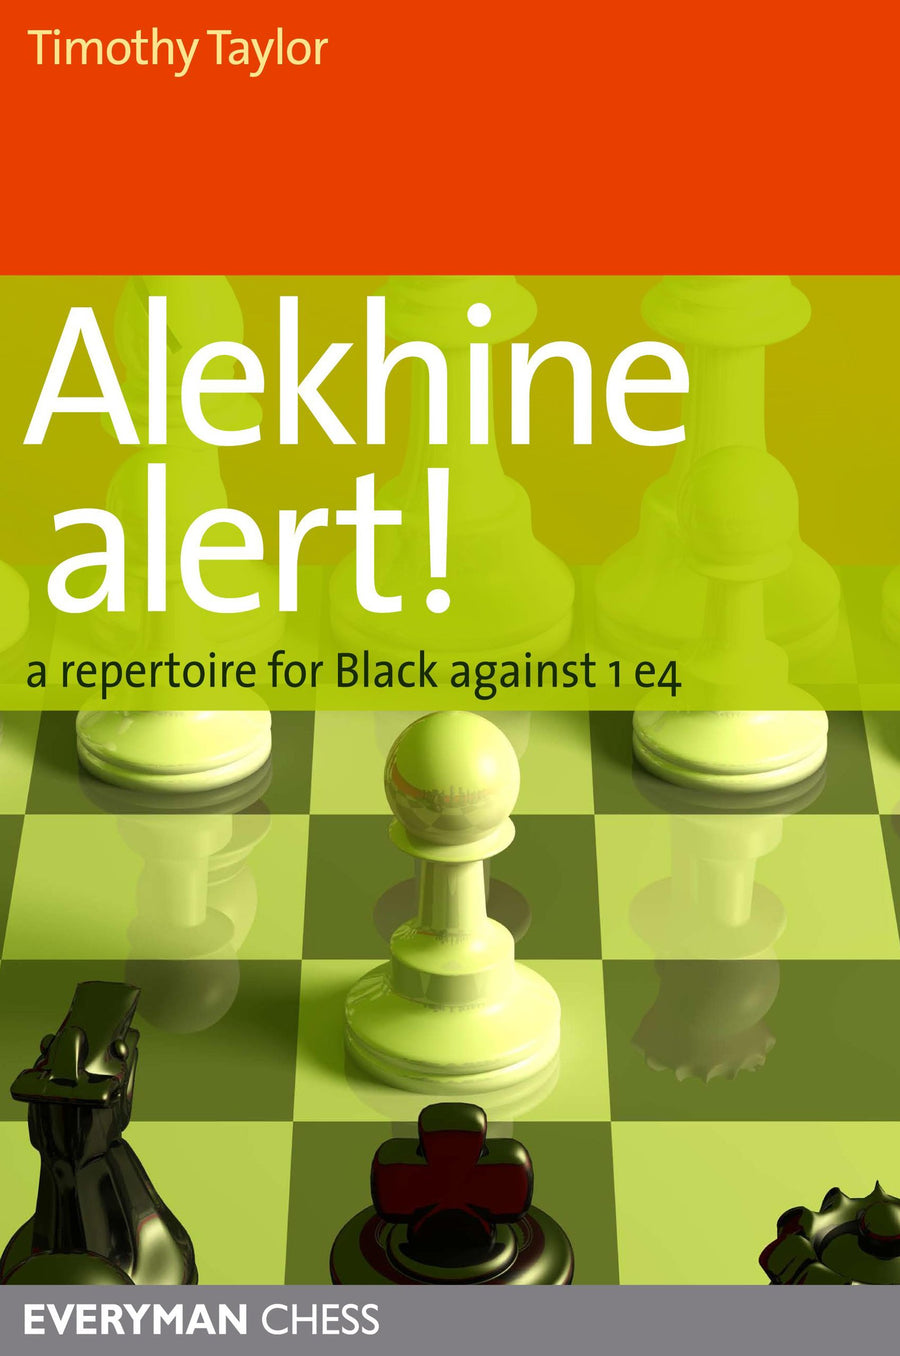 alekhine defense mokele mbembe variation white resign #chessrush